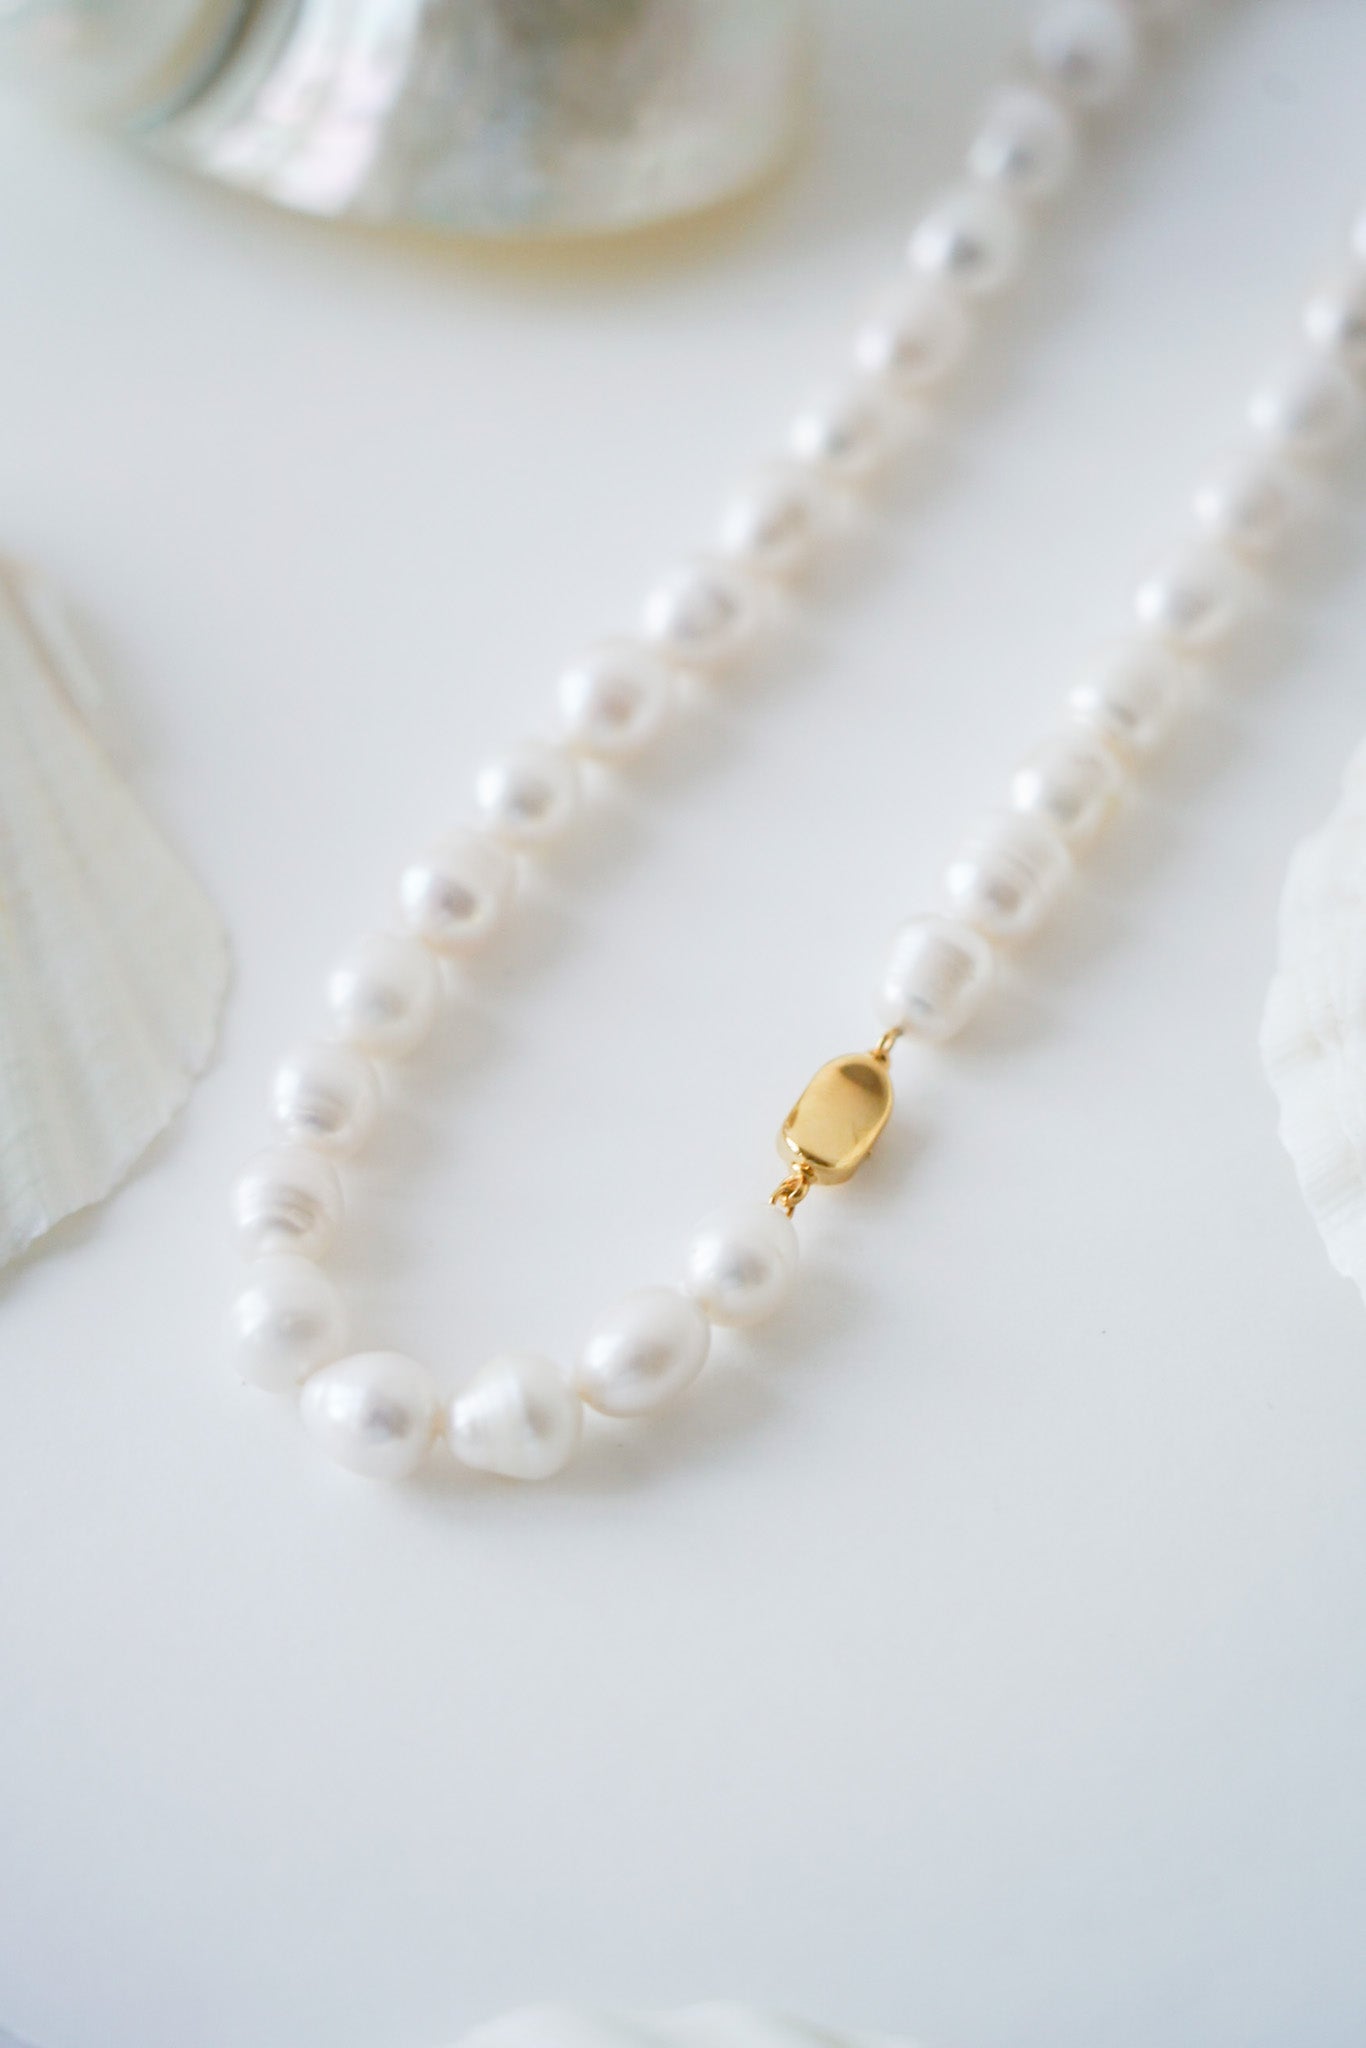 collier de perles posé sur un fond blanc avec une attache en or et des coquillages